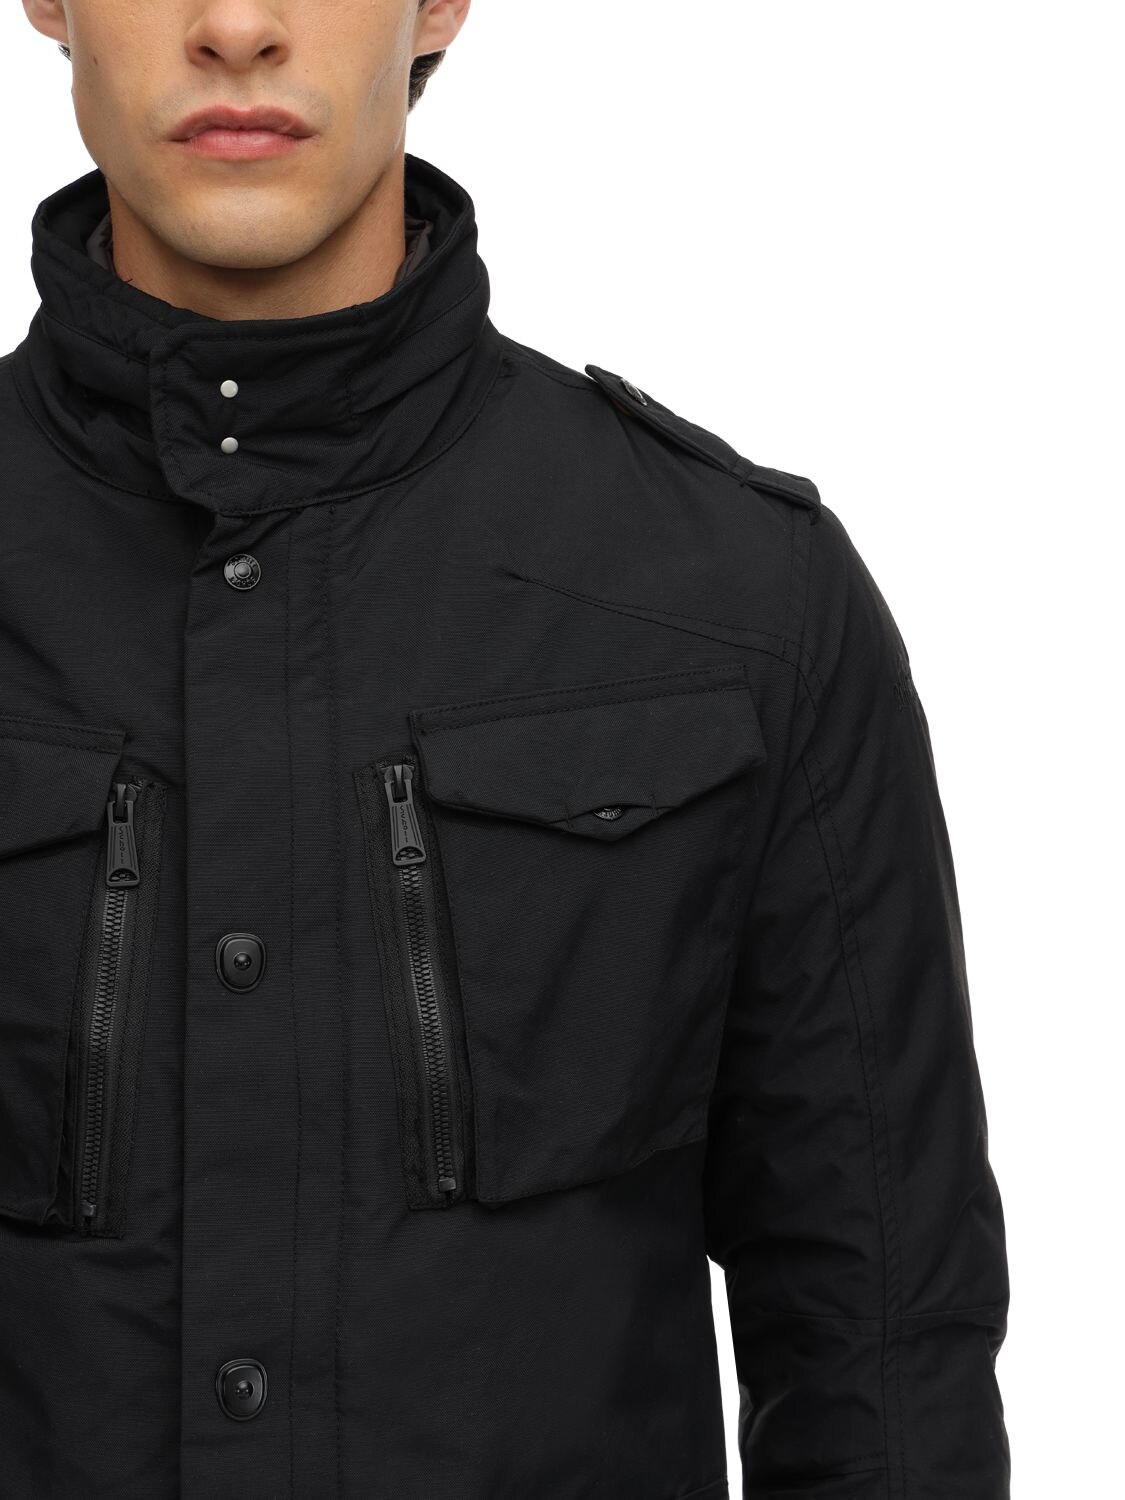 Schott Men's Black Nylon Field Jacket.